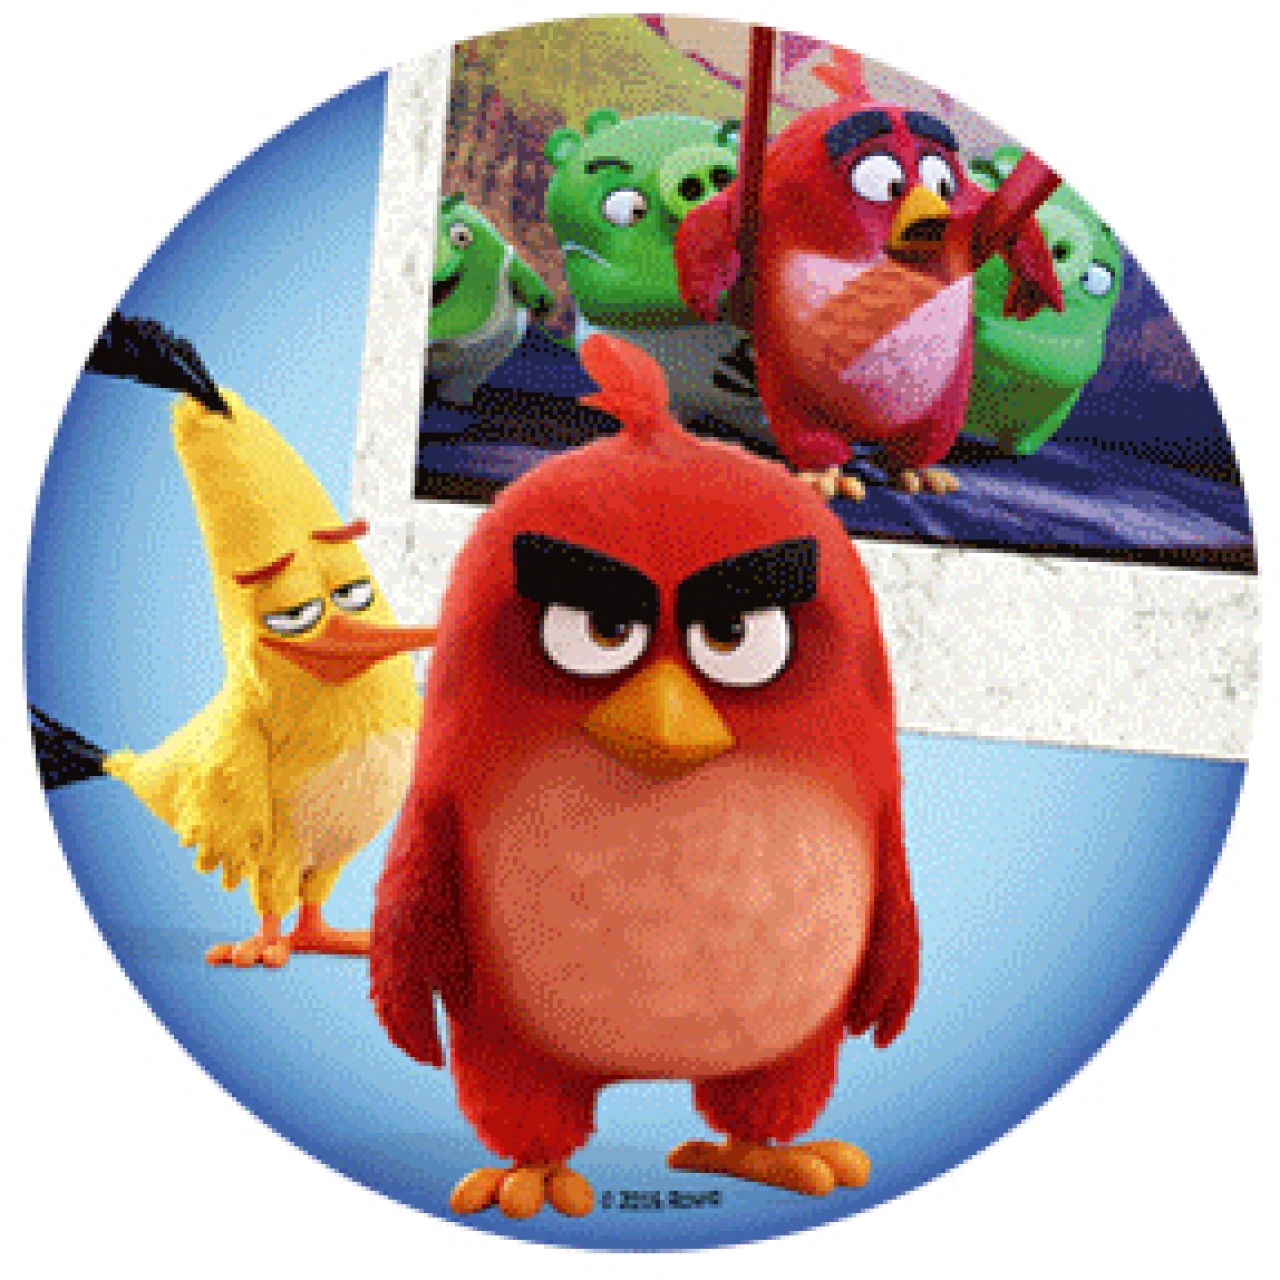 Tortenaufleger "Angry Birds" aus Oblatenpapier, Red, Chuck und Schweine, 21 cm